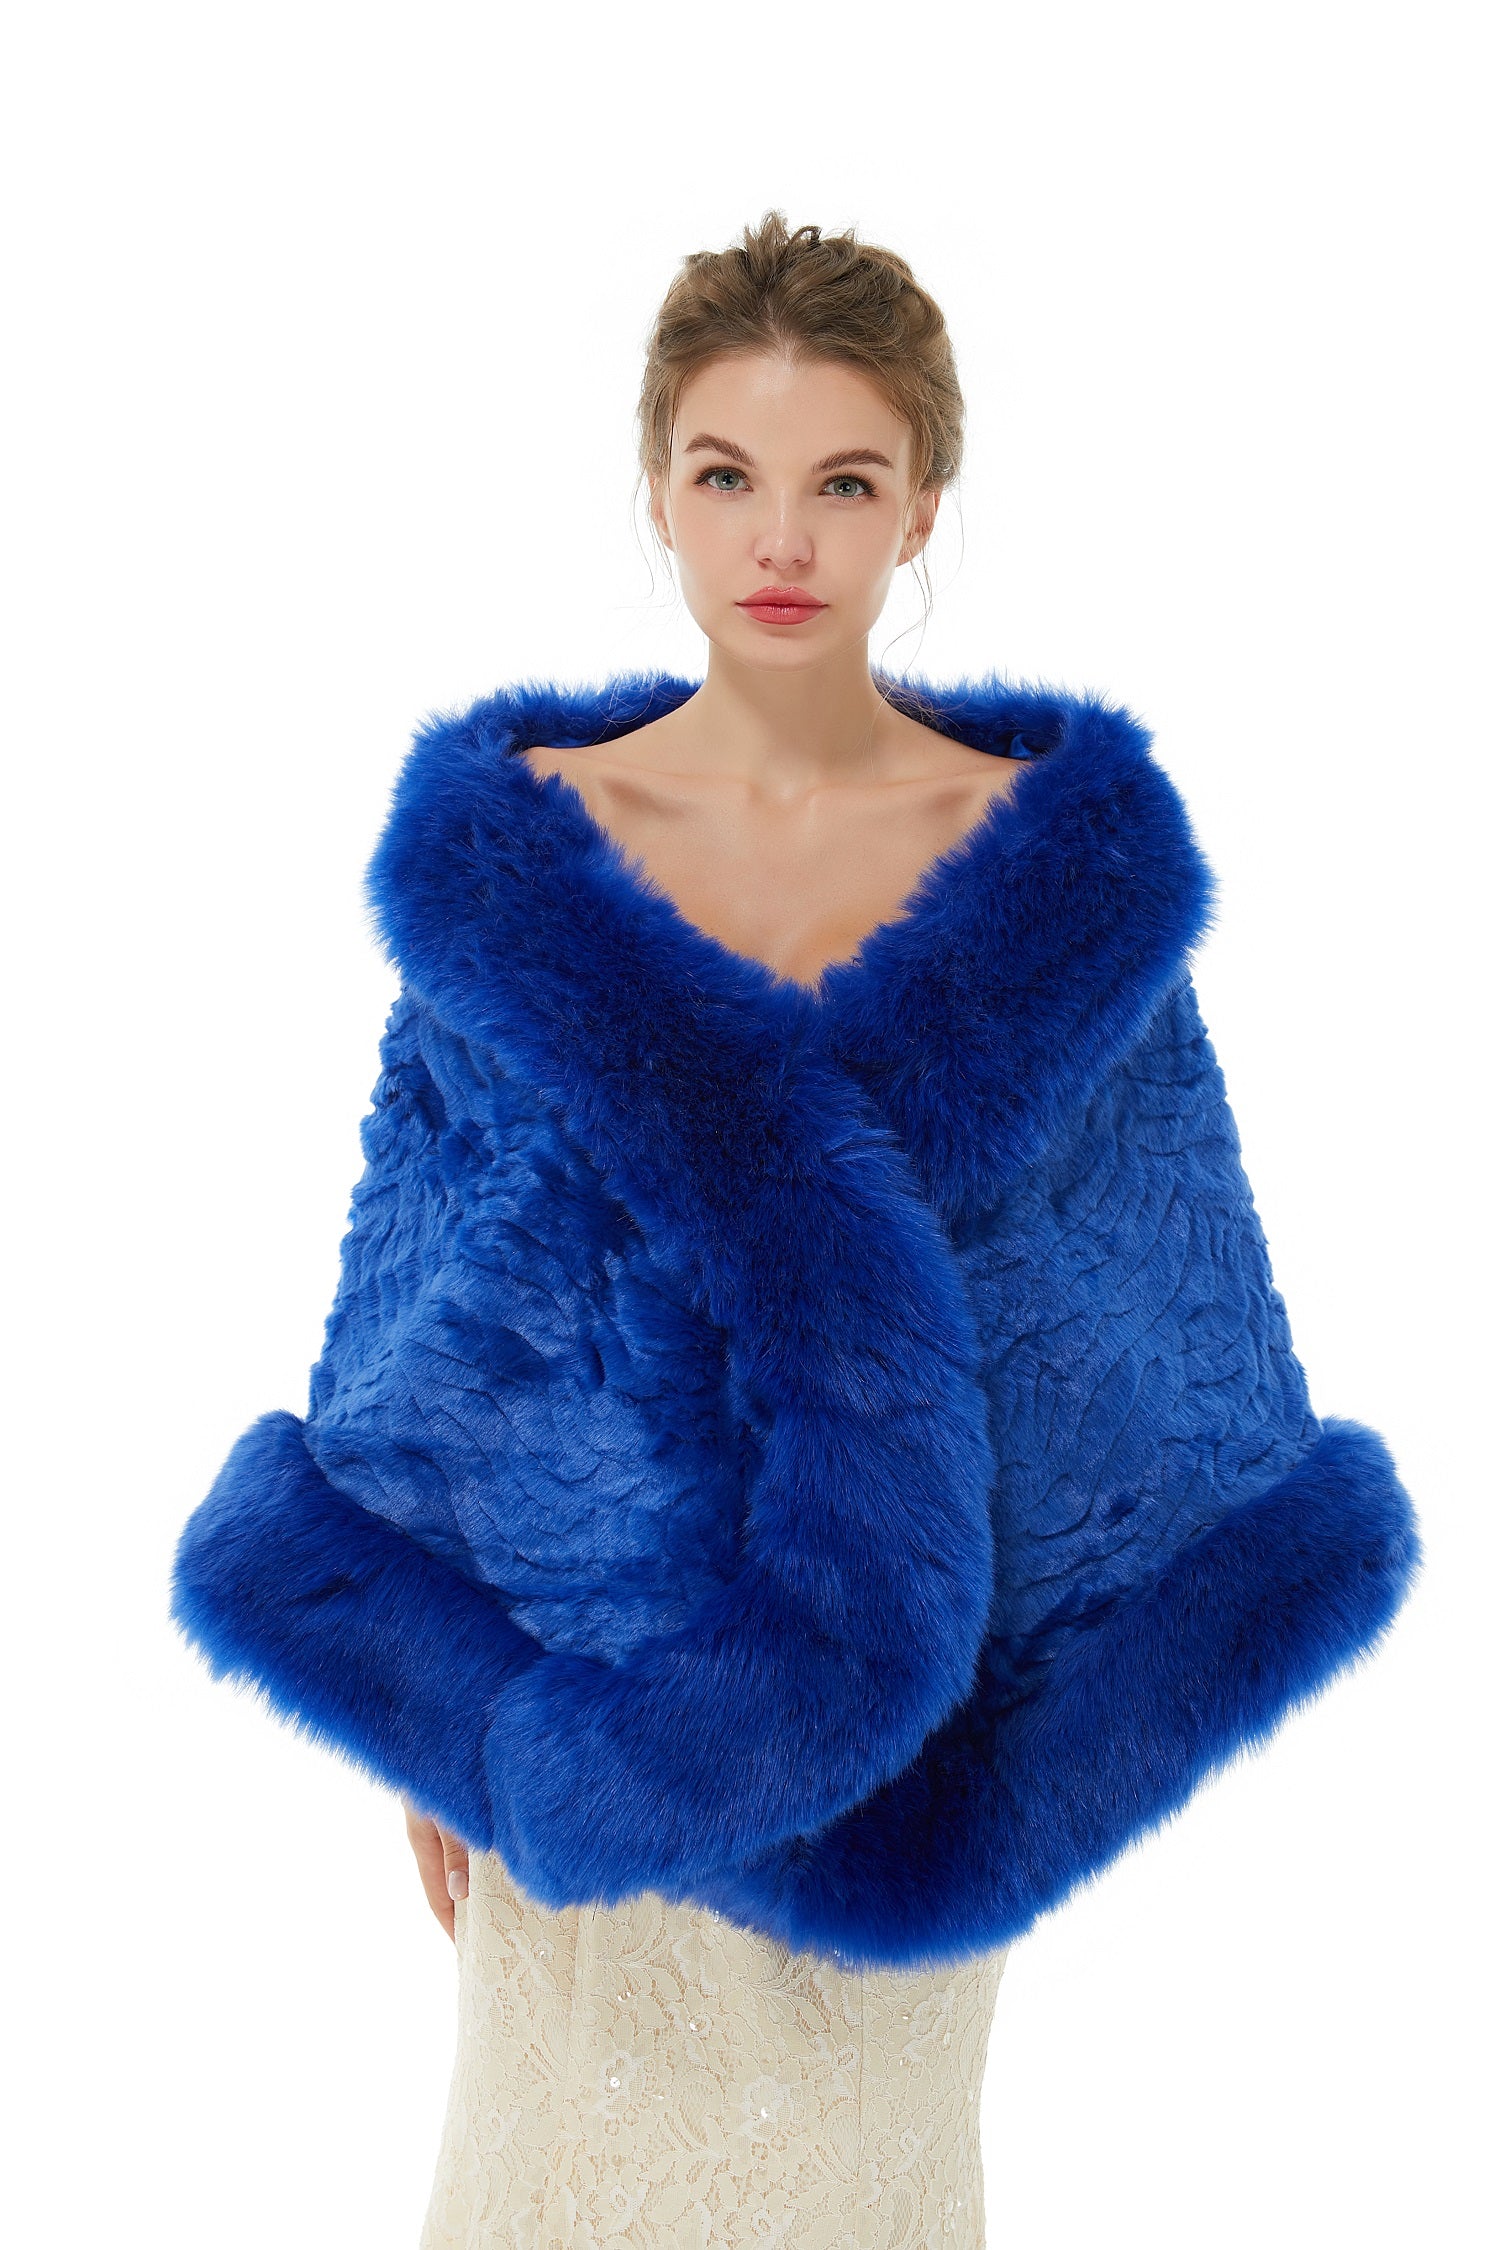 Luluslly Royal Blue Winter Faux Fur Wedding Wrap